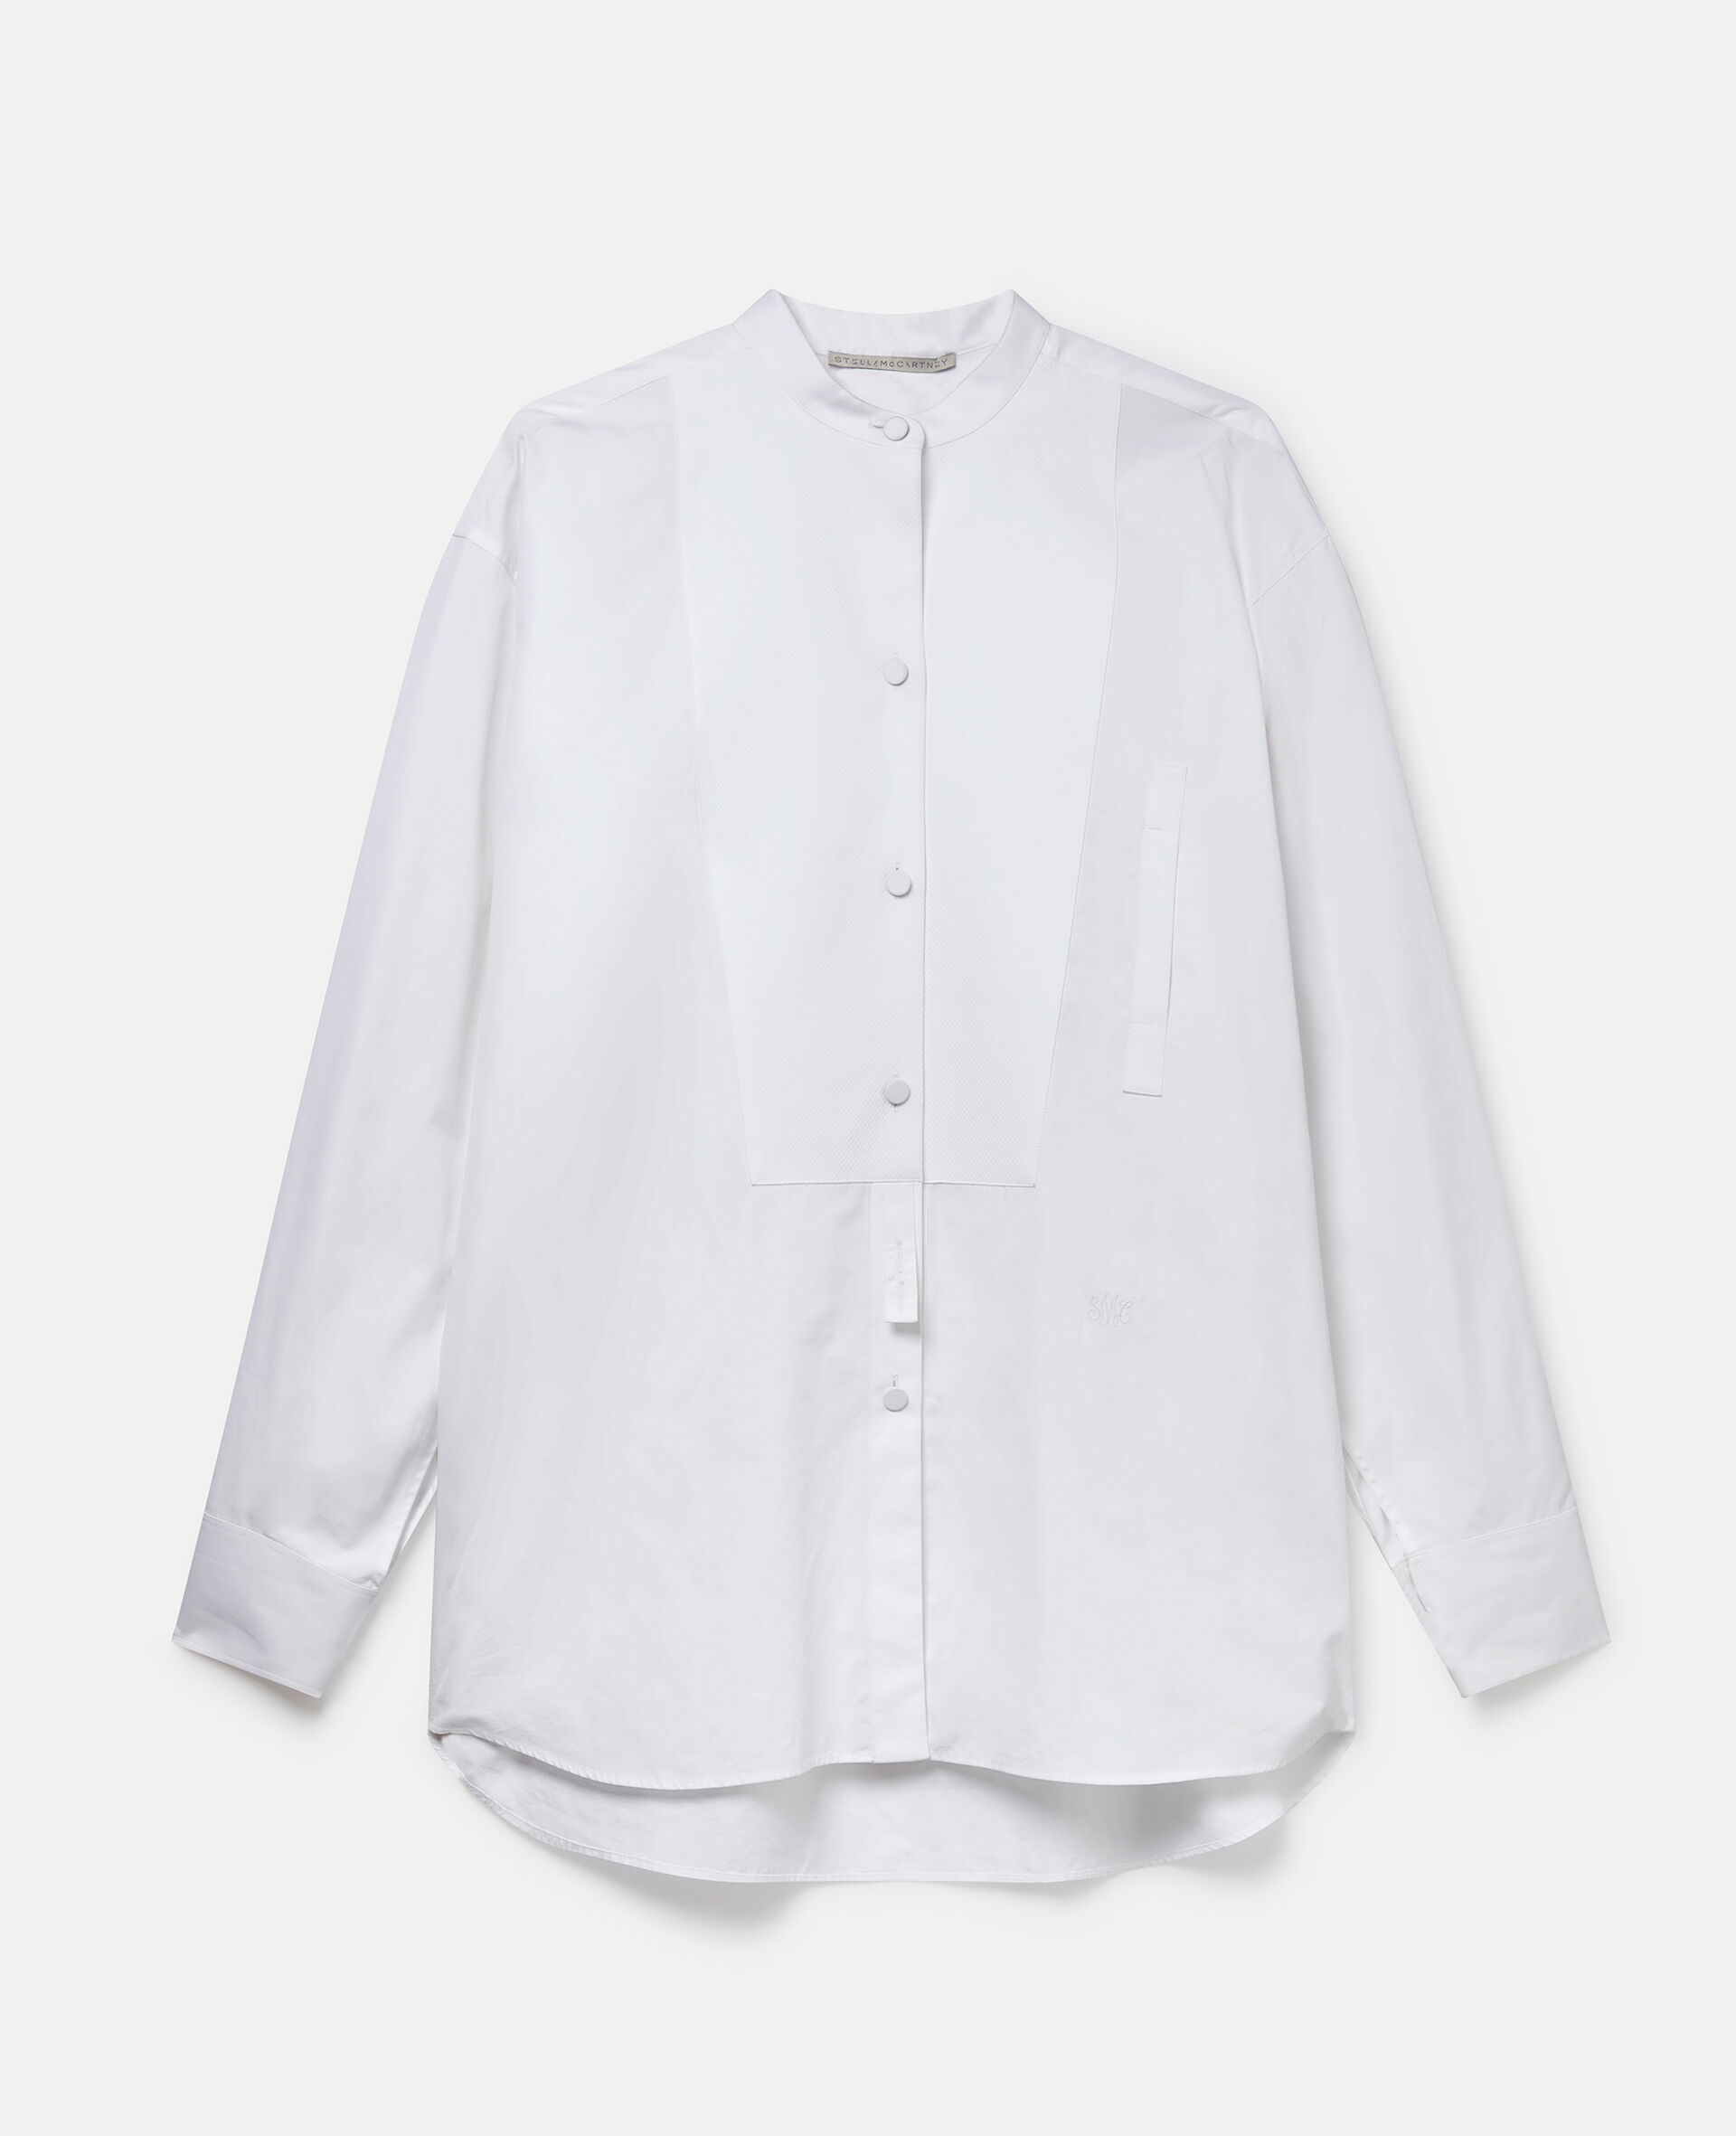 グランドファーザーカラー コットン タキシードシャツ-ホワイト-large image number 0